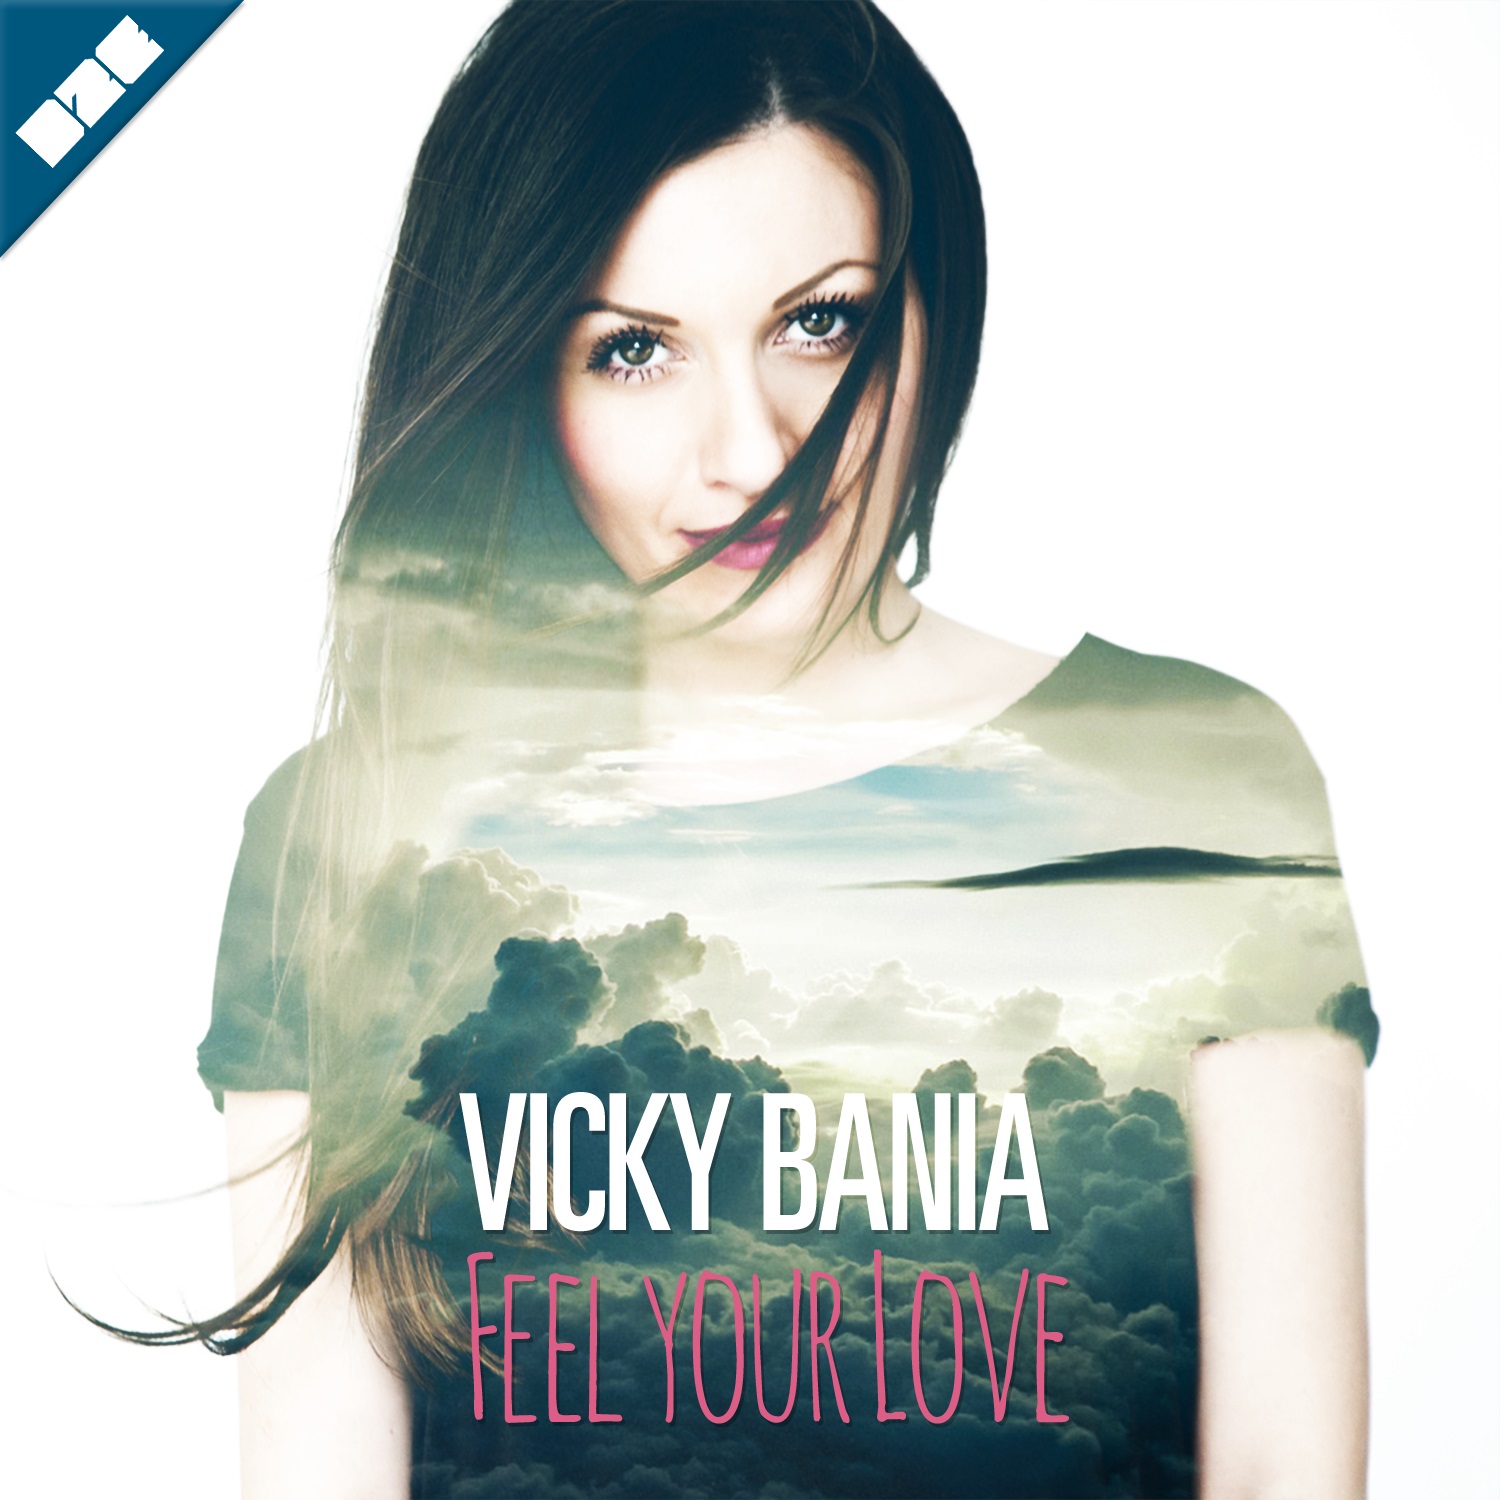 Vicky Bania - feel your loveLQ